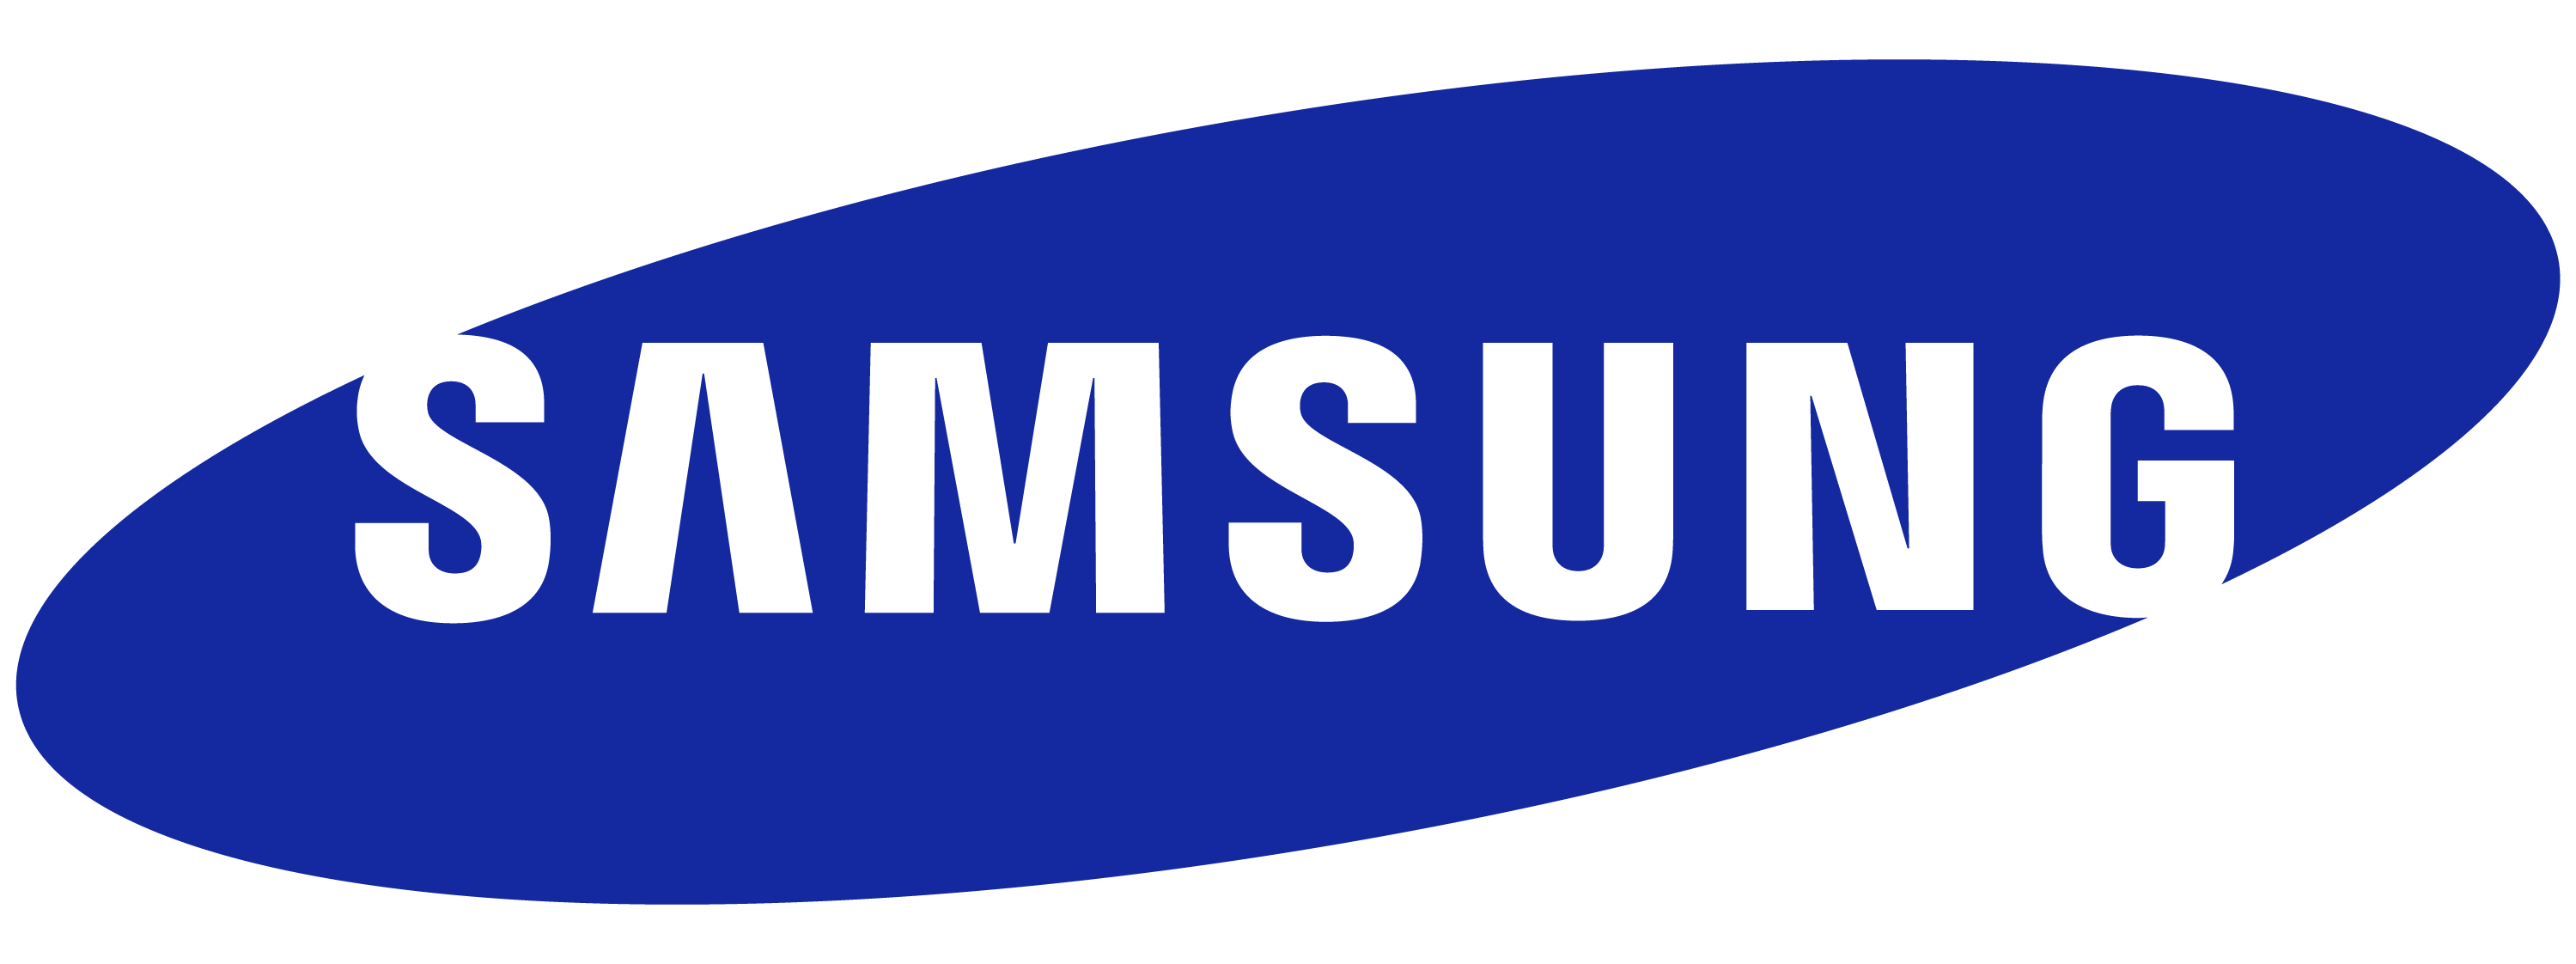 Samsung-Logo-Wordmark-RGB